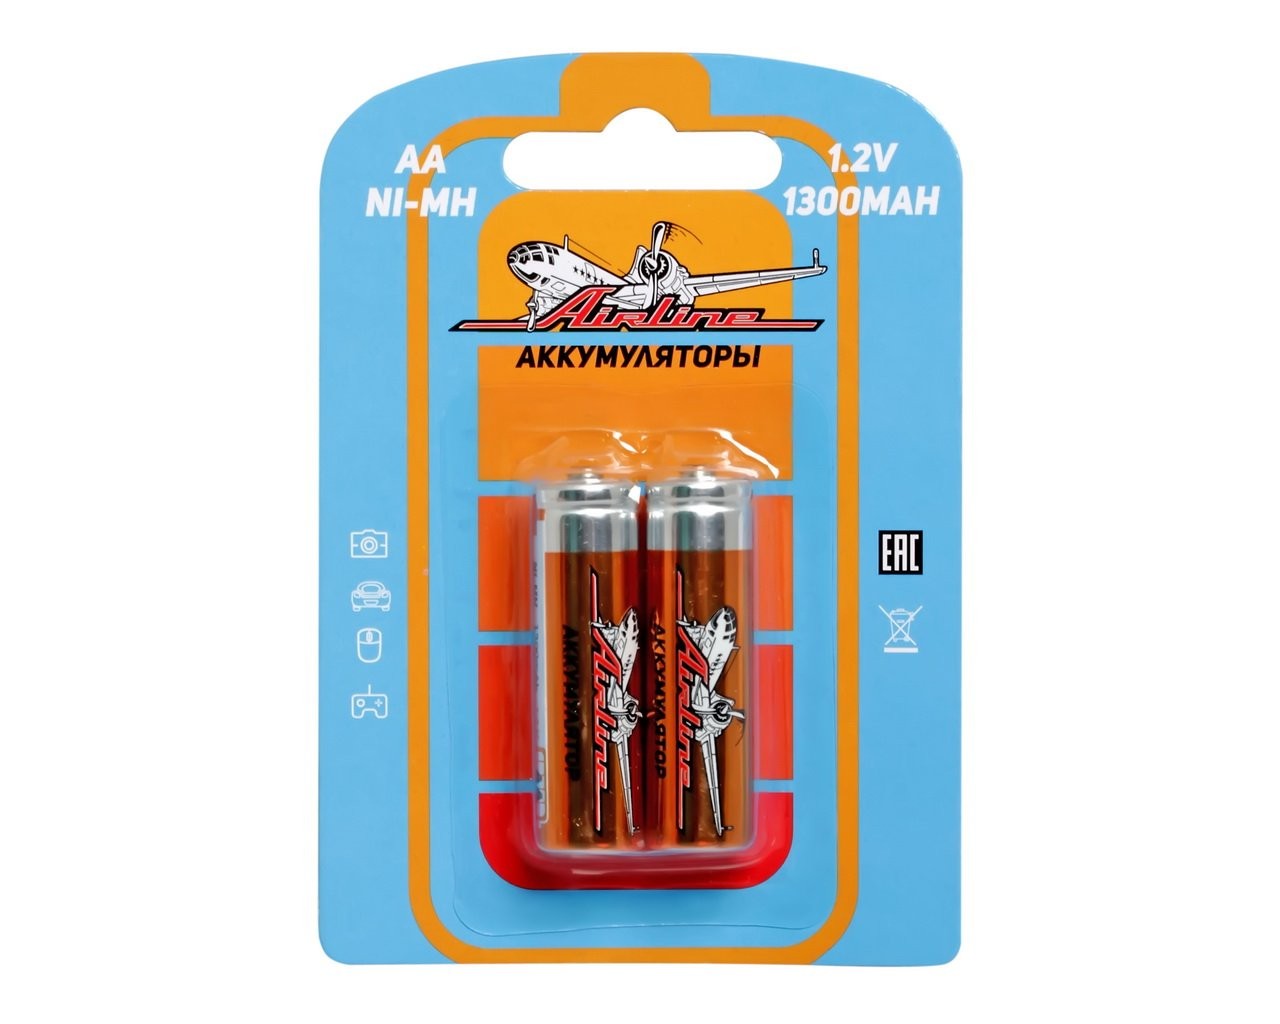 Батарейка AA HR6 аккумулятор Ni-Mh 1300 mAh (AIRLINE) (к-т 2шт)!!!!